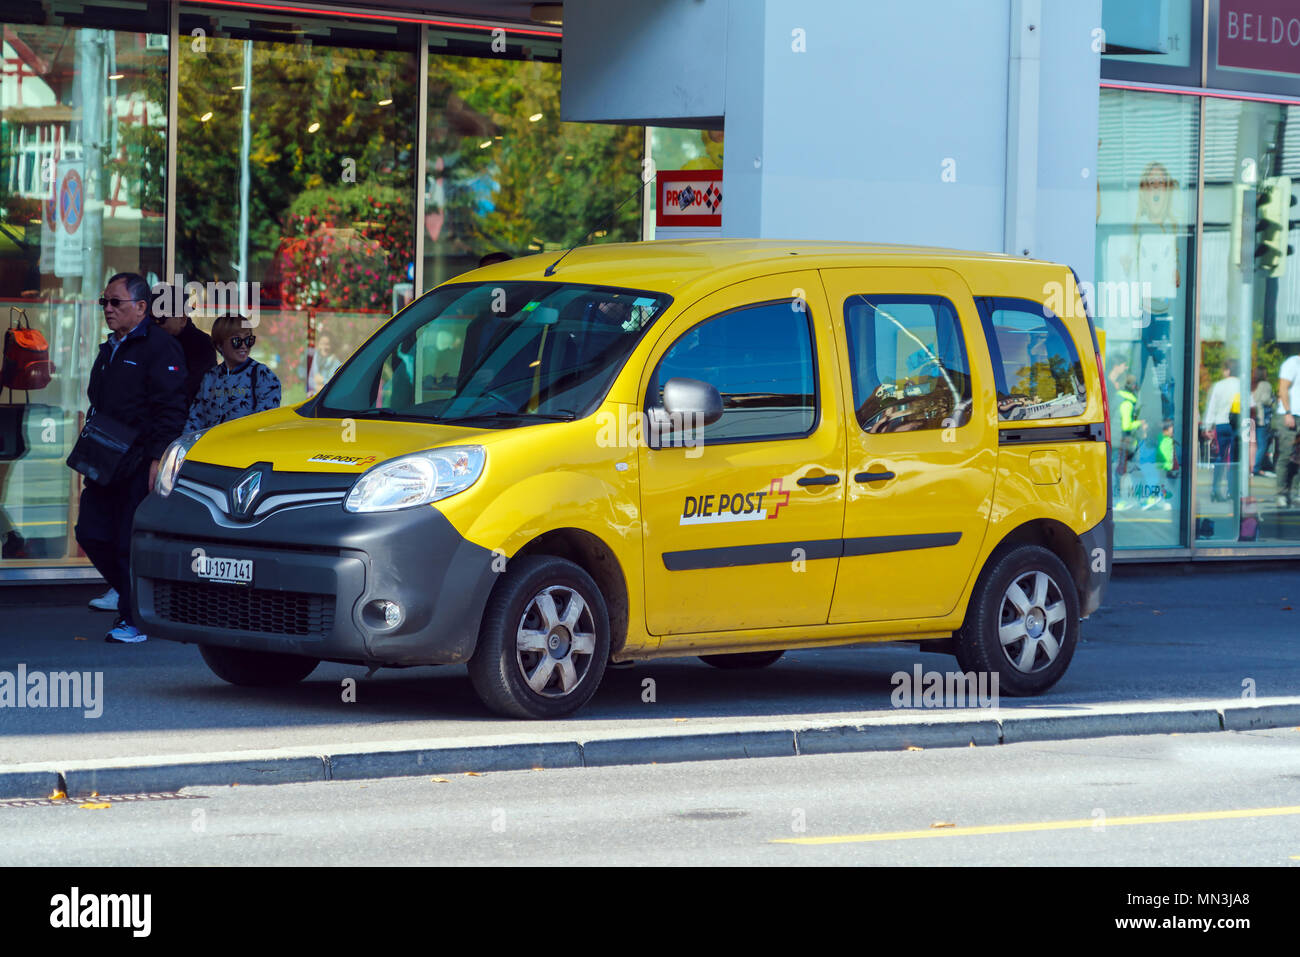 Luzern, Schweiz - Oktober 19, 2017: Gelb Renault Auto für die Bedürfnisse  der Post der Stadt Stockfotografie - Alamy